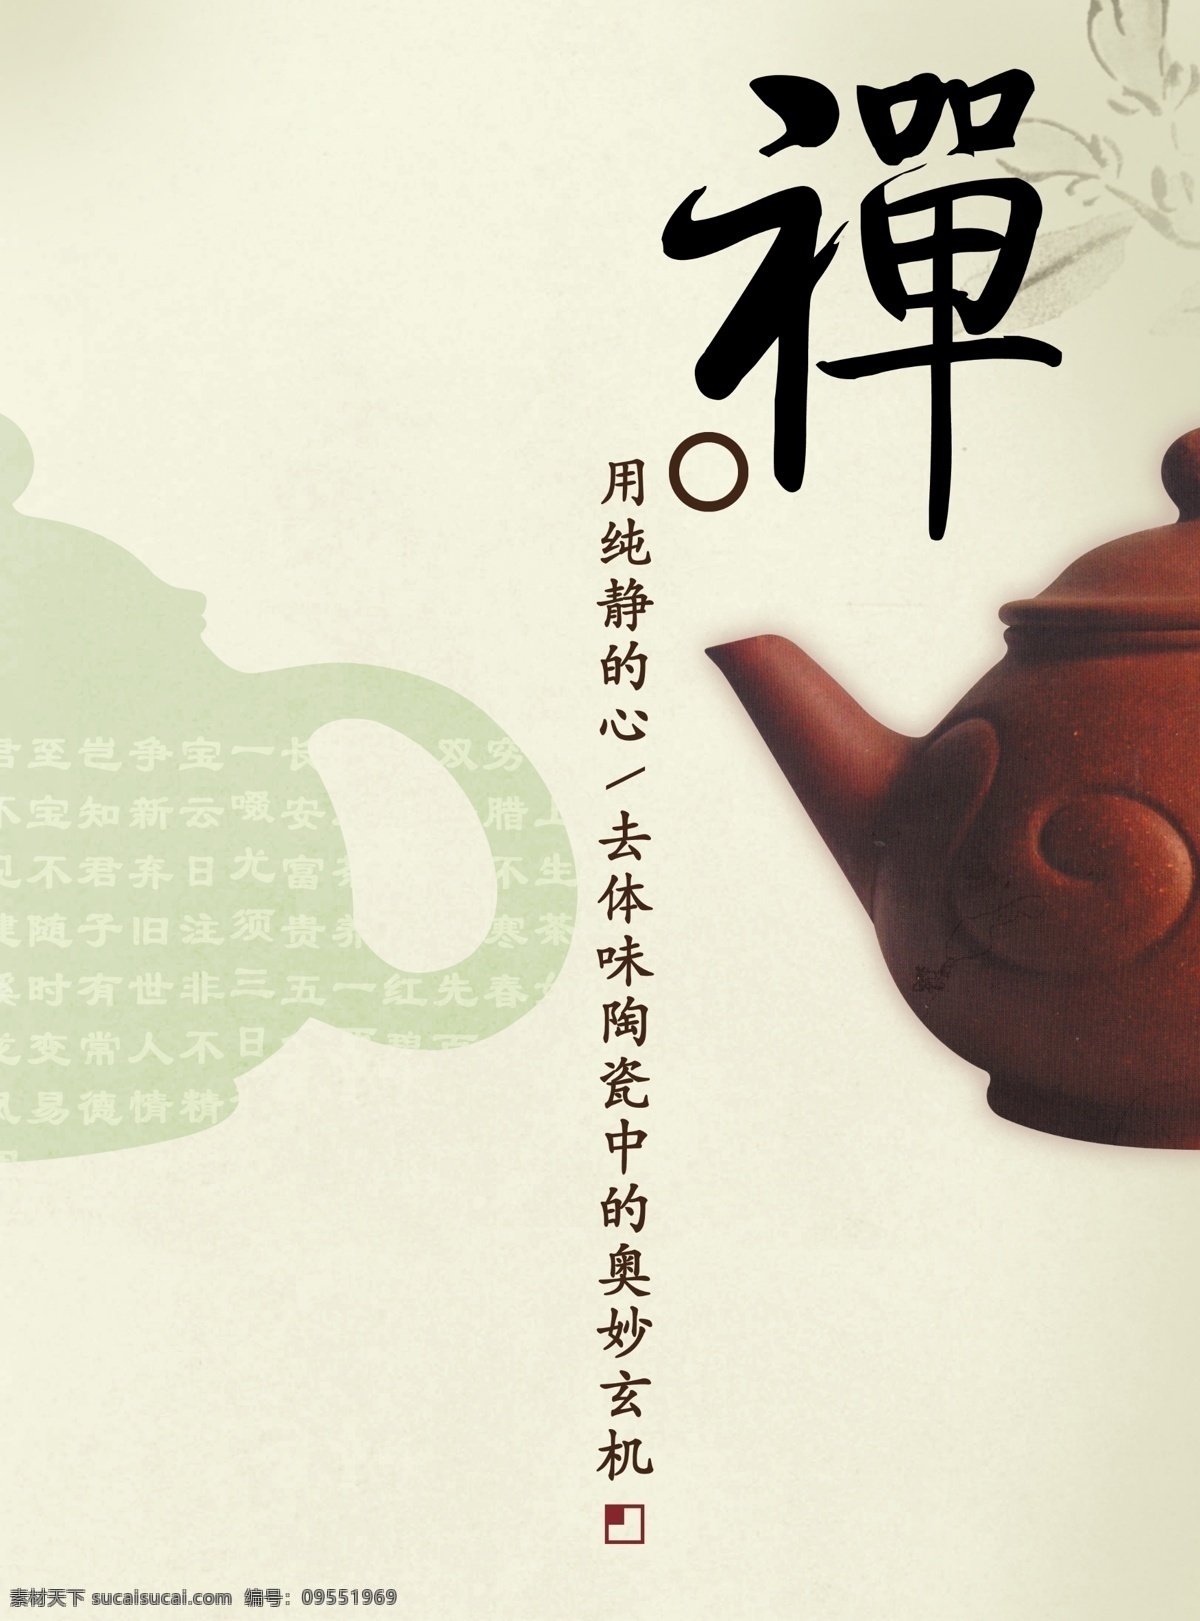 茶壶 陶瓷文化 广告 陶瓷海报 茶壶文化 广告海报 花纹 茶壶素材 禅 广告设计模板 源文件 分层 红色